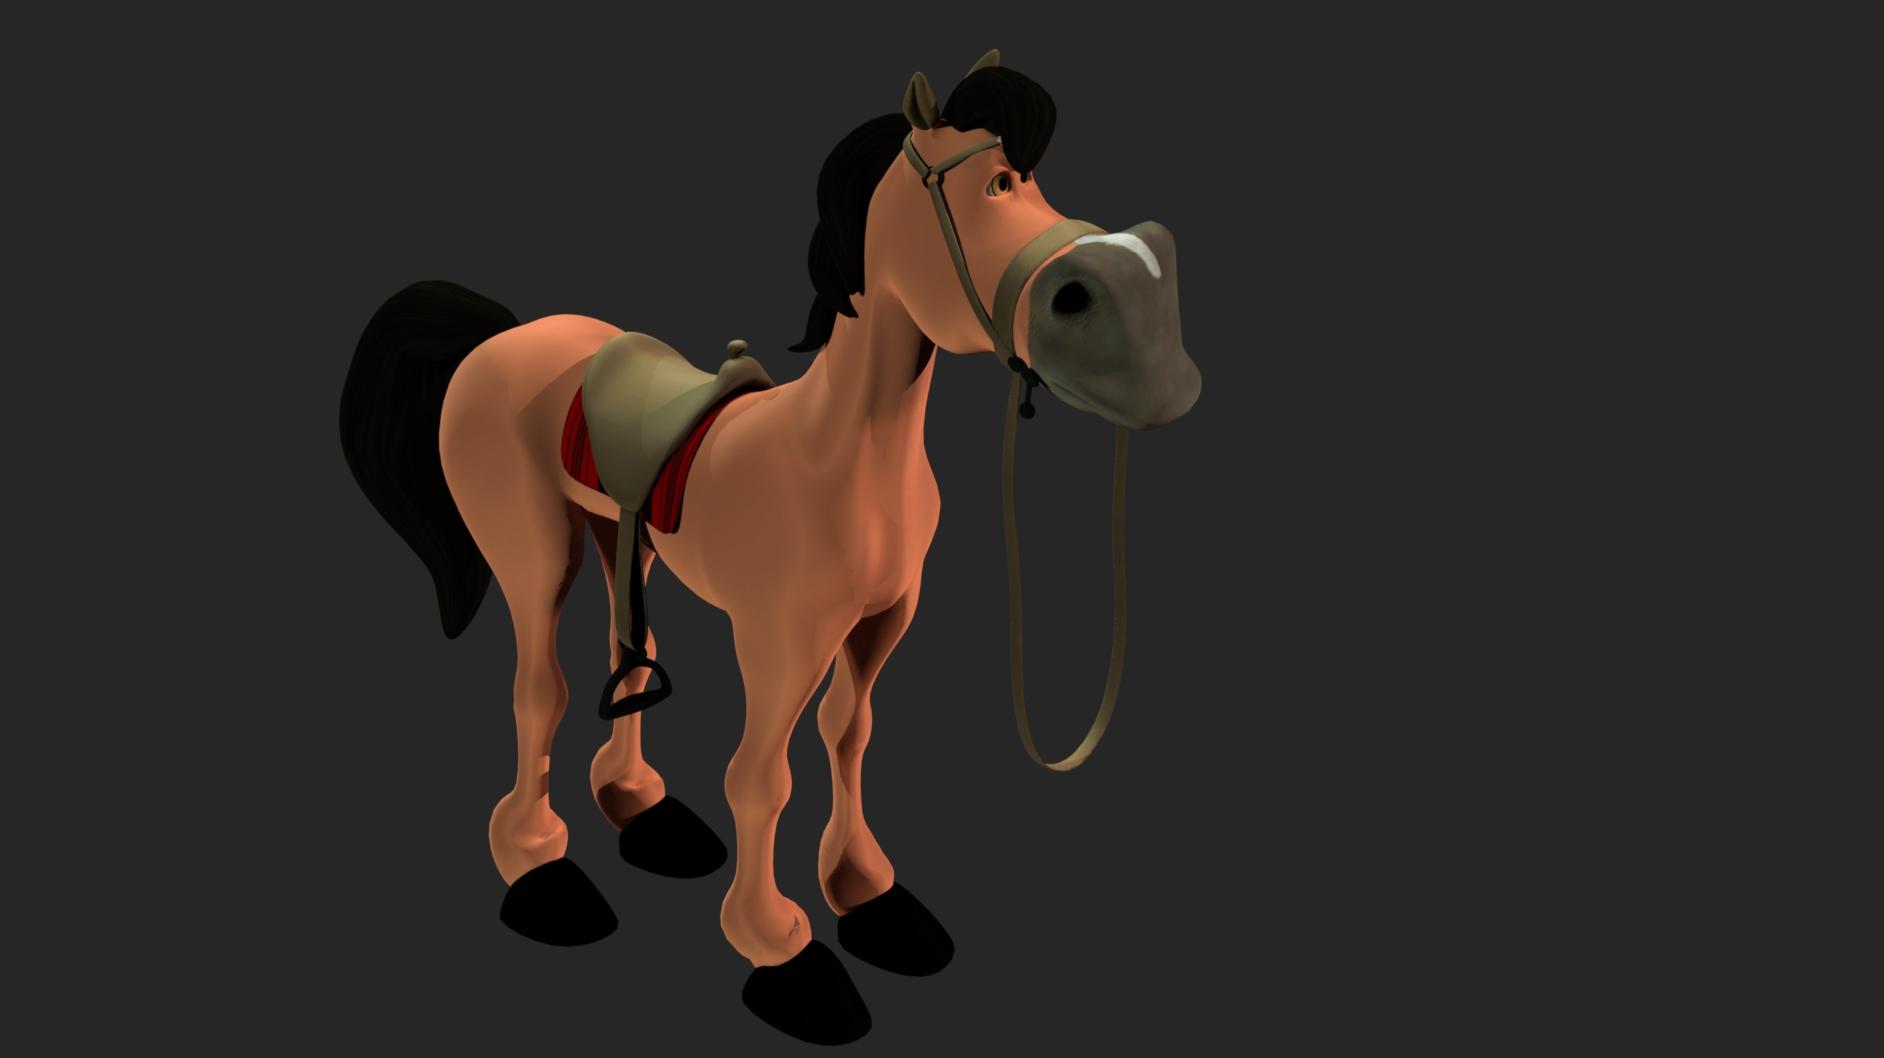 Horse 3d model